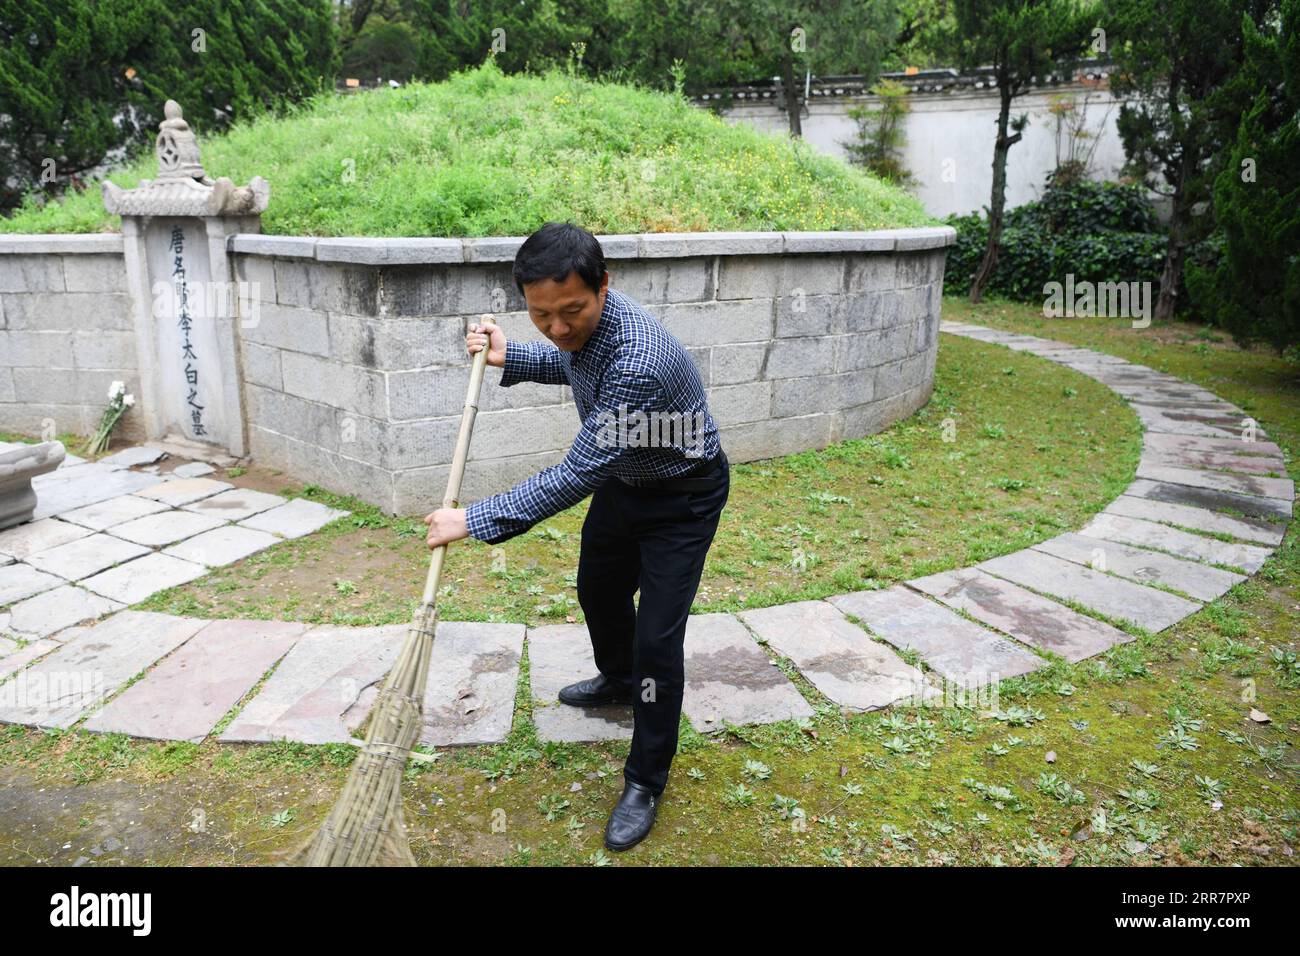 210402 -- DANGTU, 2 aprile 2021 -- GU Changxin pulisce la tomba di li Bai nel parco culturale li Bai, nella contea di Dangtu della città di Maanshan, provincia di Anhui nella Cina orientale, 31 marzo 2021. La tomba di li Bai, un famoso poeta della dinastia Tang 618-907, si trova ai piedi del monte Qingshan nella contea di Dangtu nella città di Maanshan. Dopo la morte di li Bai a Dangtu, il suo buon amico GU Lanxin offrì la sua terra come luogo di sepoltura di li Bai. Da allora, la famiglia GU è diventata custode della tomba di li Bai, che continua ancora oggi. Nel 1985, il diciottenne GU Changxin divenne il custode di tombe della 49a generazione. Per più di 30 voi Foto Stock